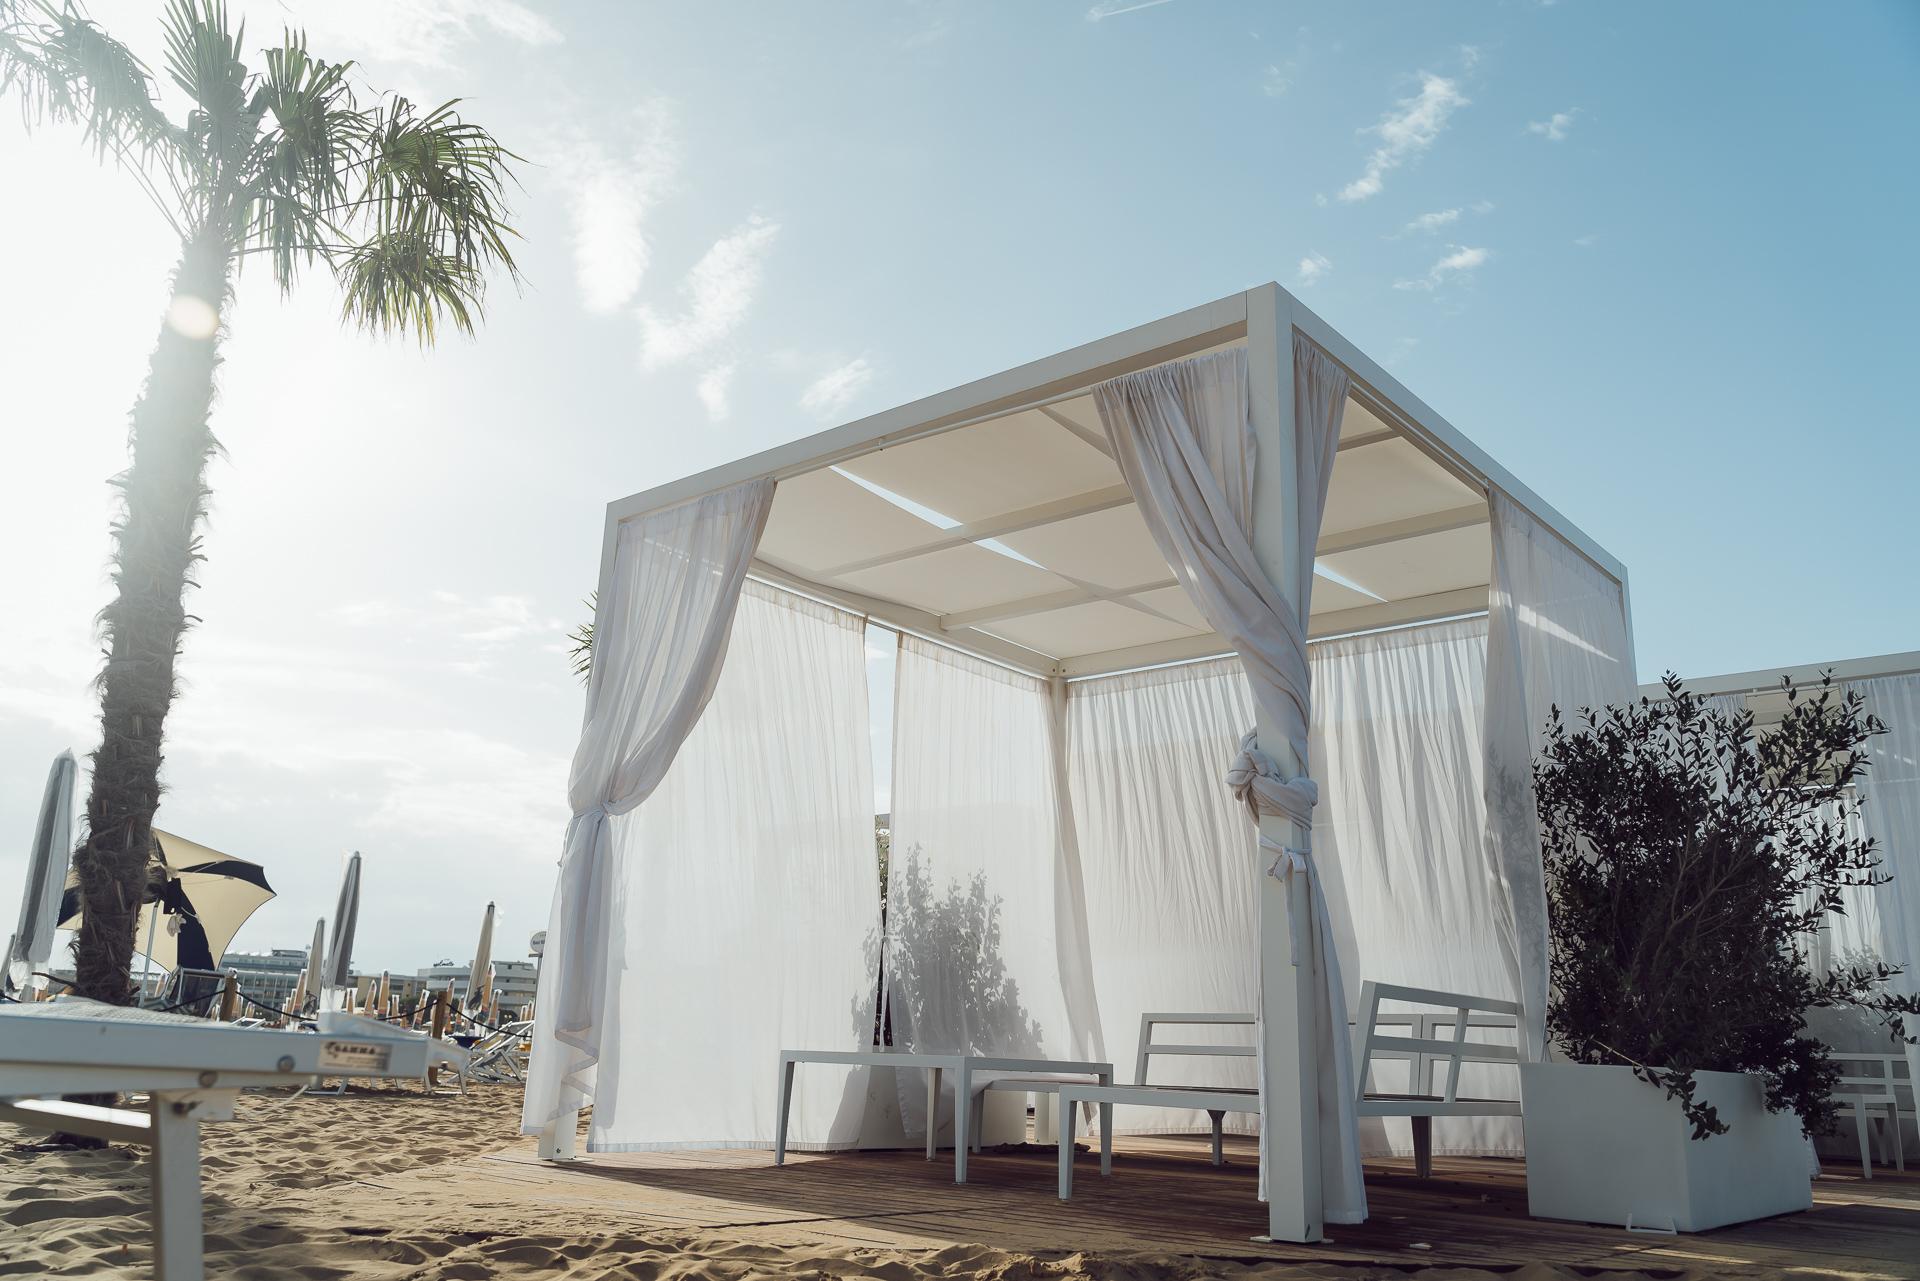 Der Loungebereich der neuen Strandsabschnitten von Bibione